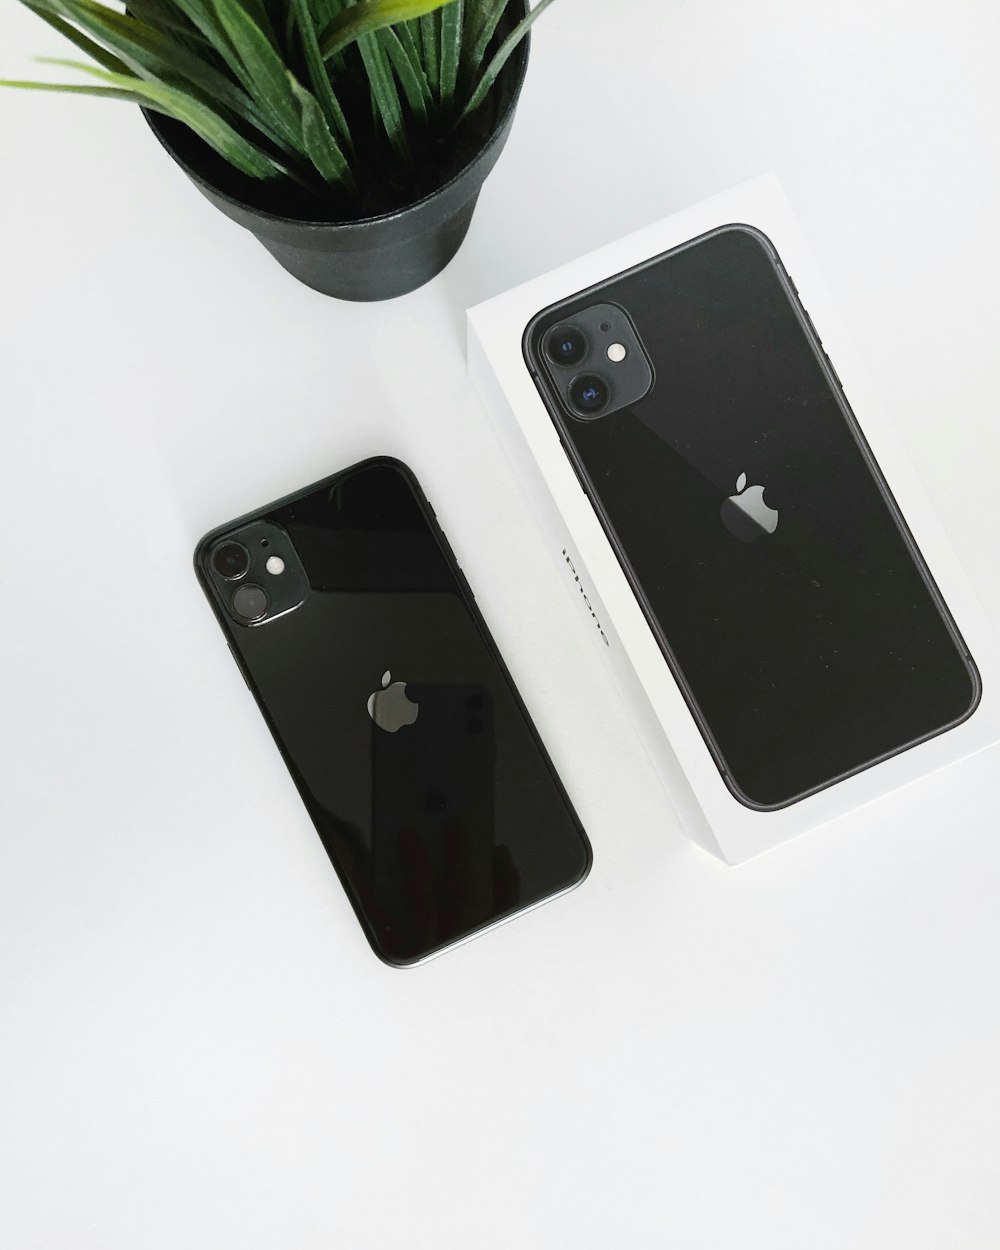 Black Iphone 11 With Box Photo Free Image On Unsplash